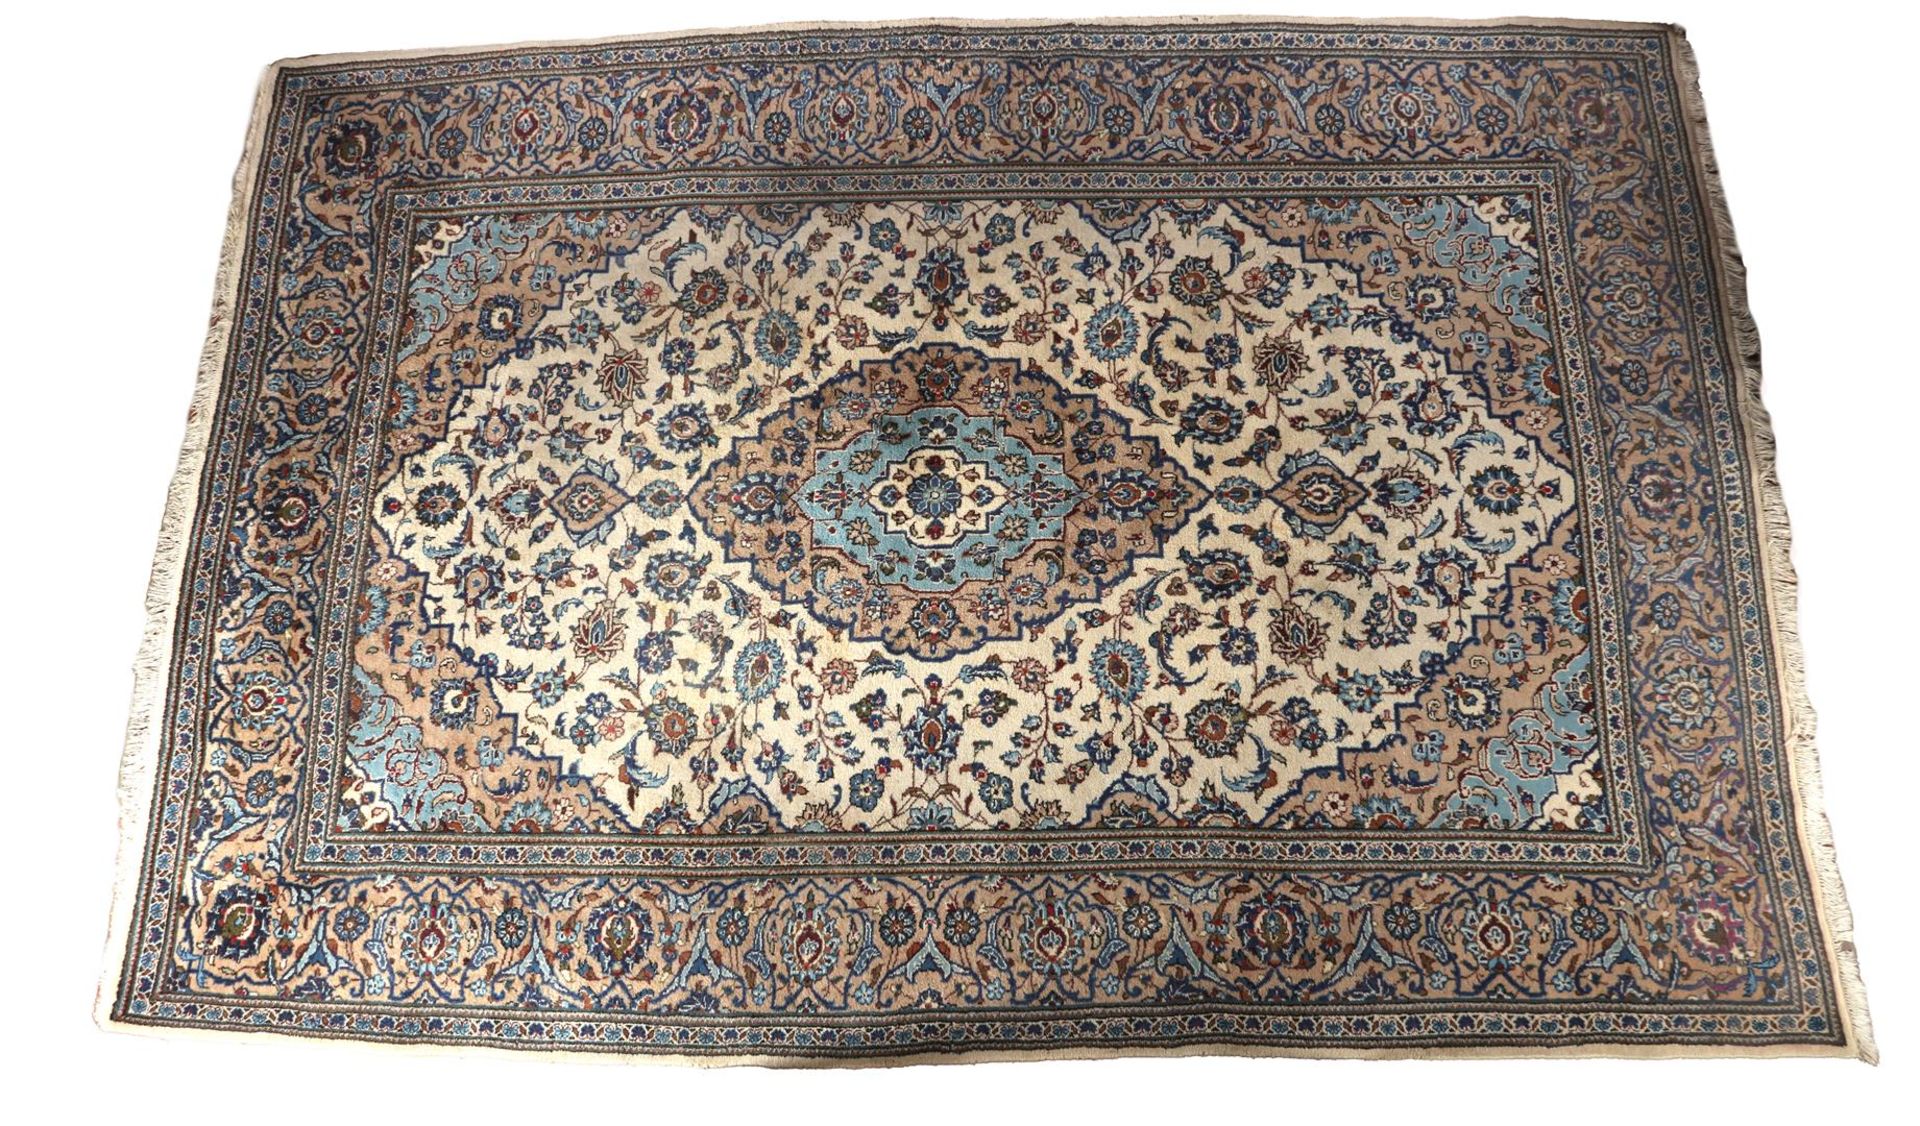 Kaschan carpet